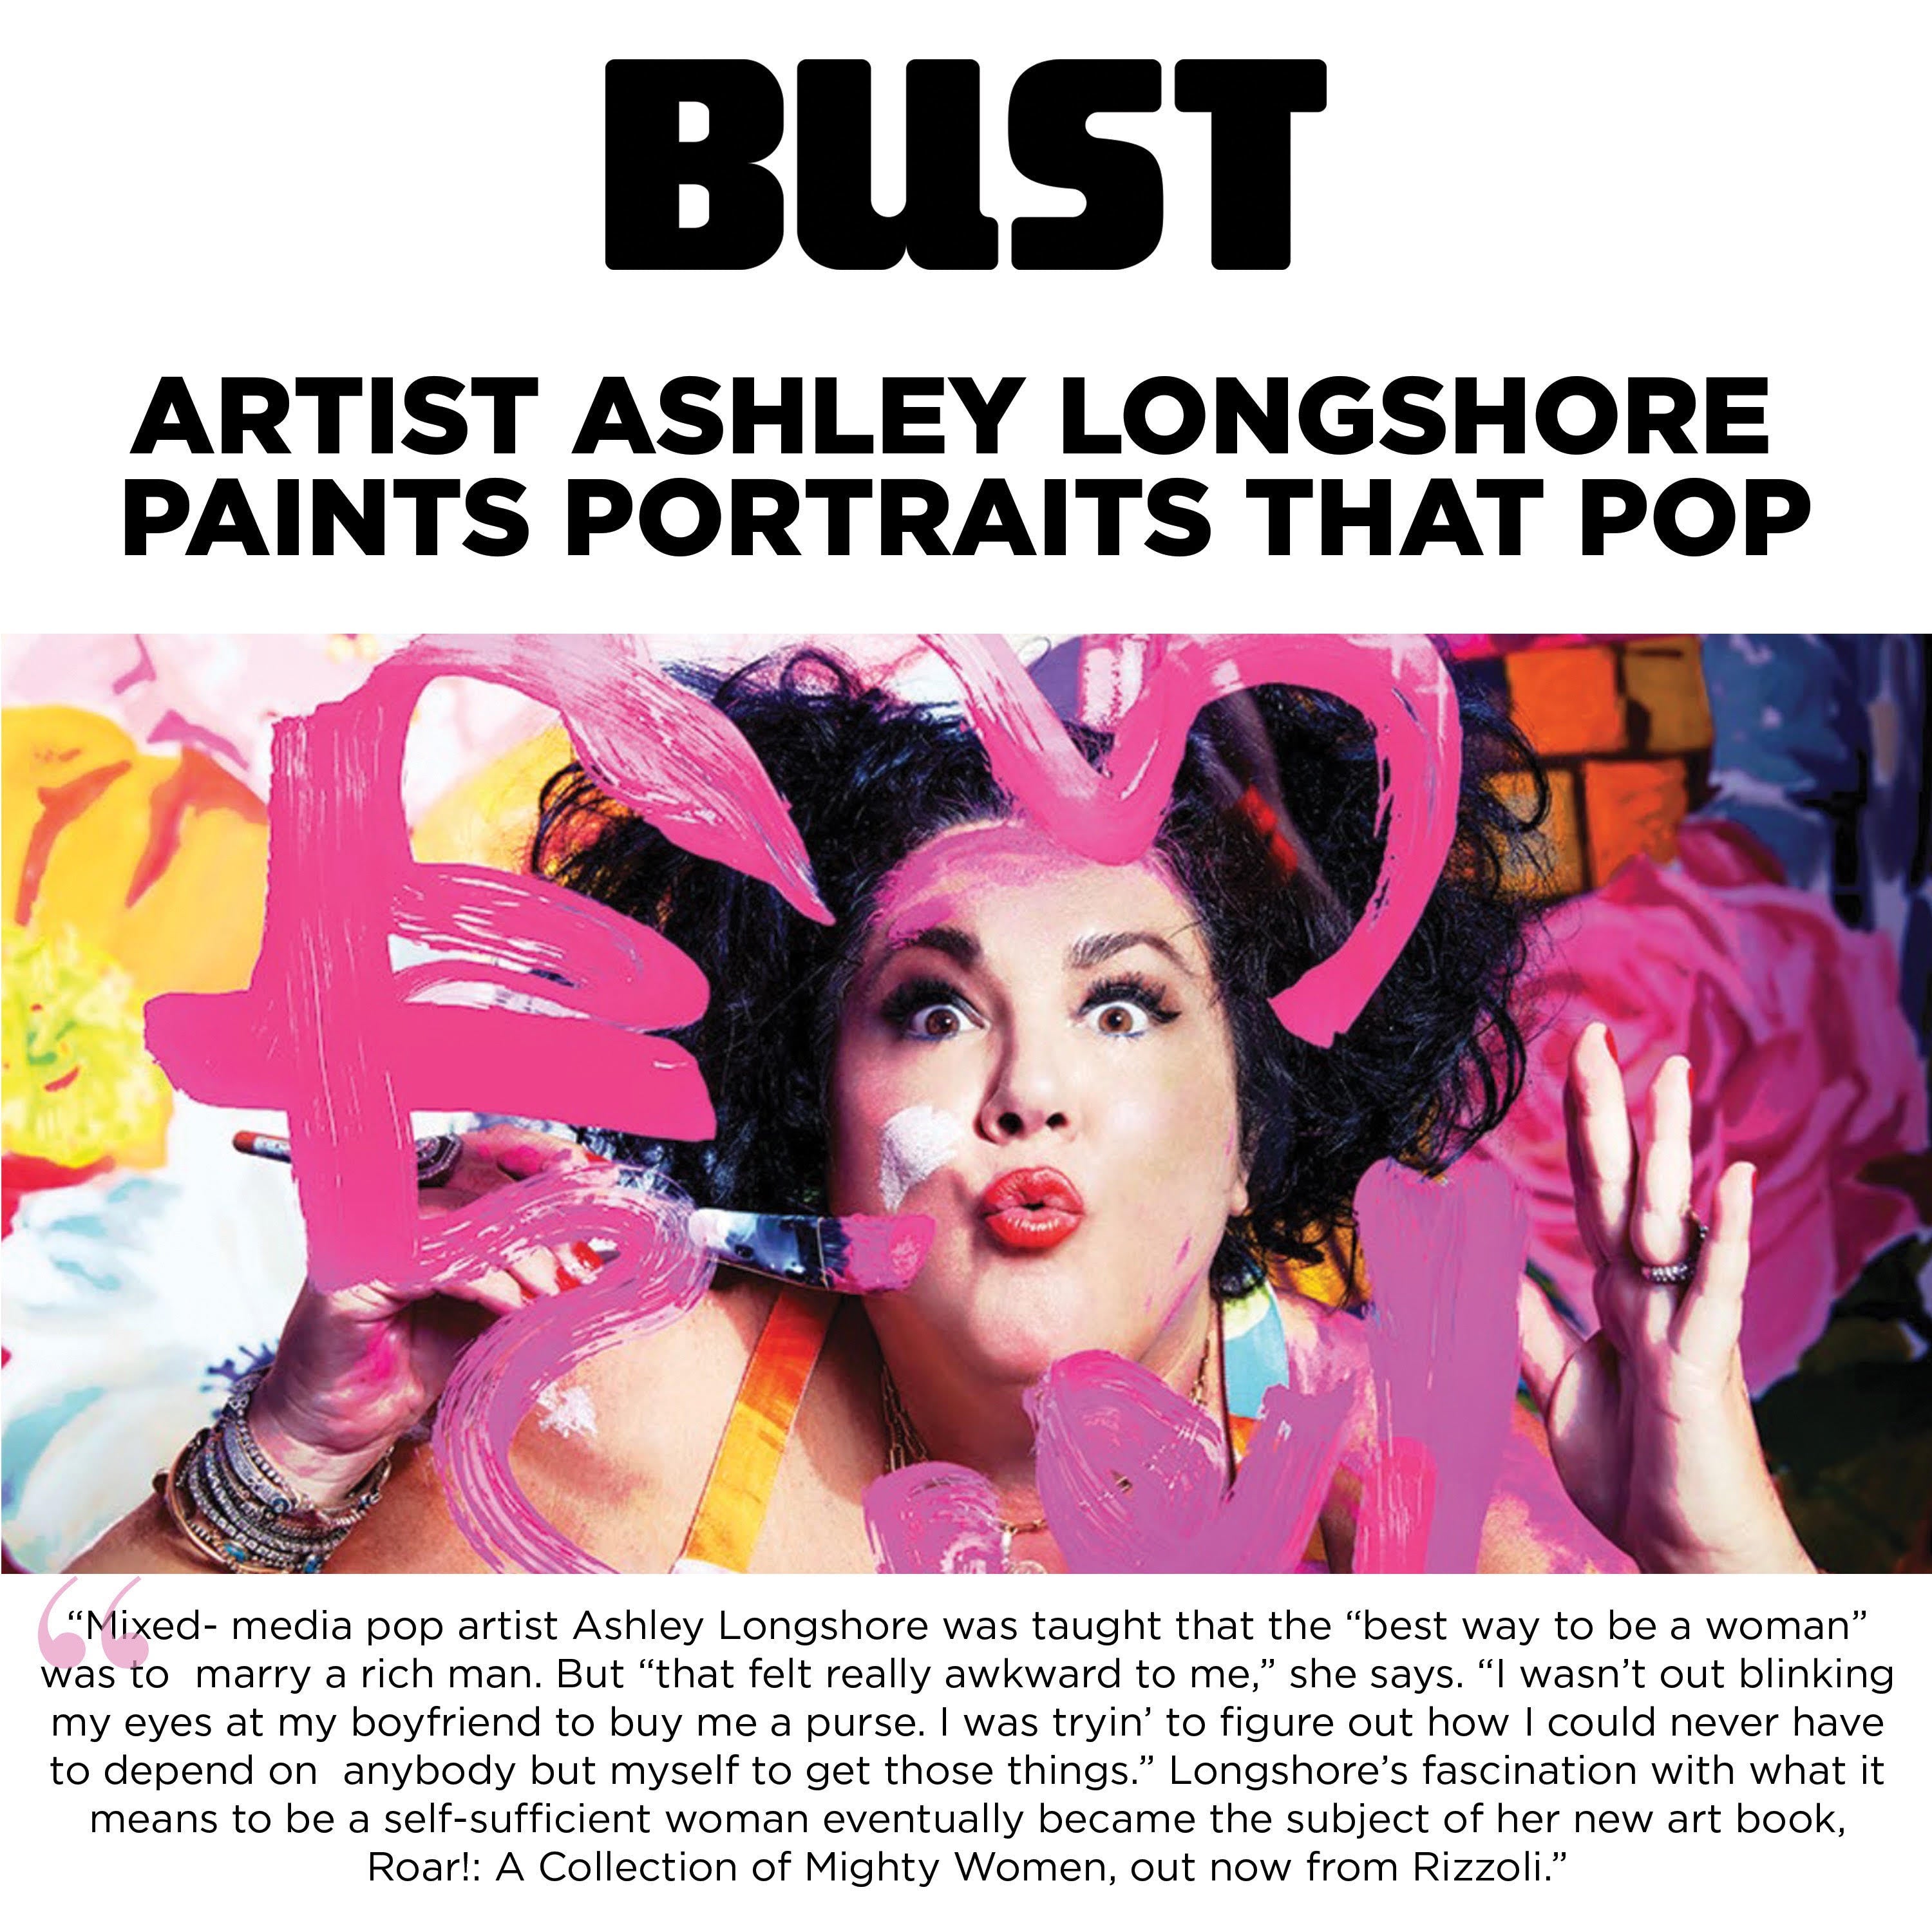 BUST: Artist Ashley Longshore Paints Portraits That Pop